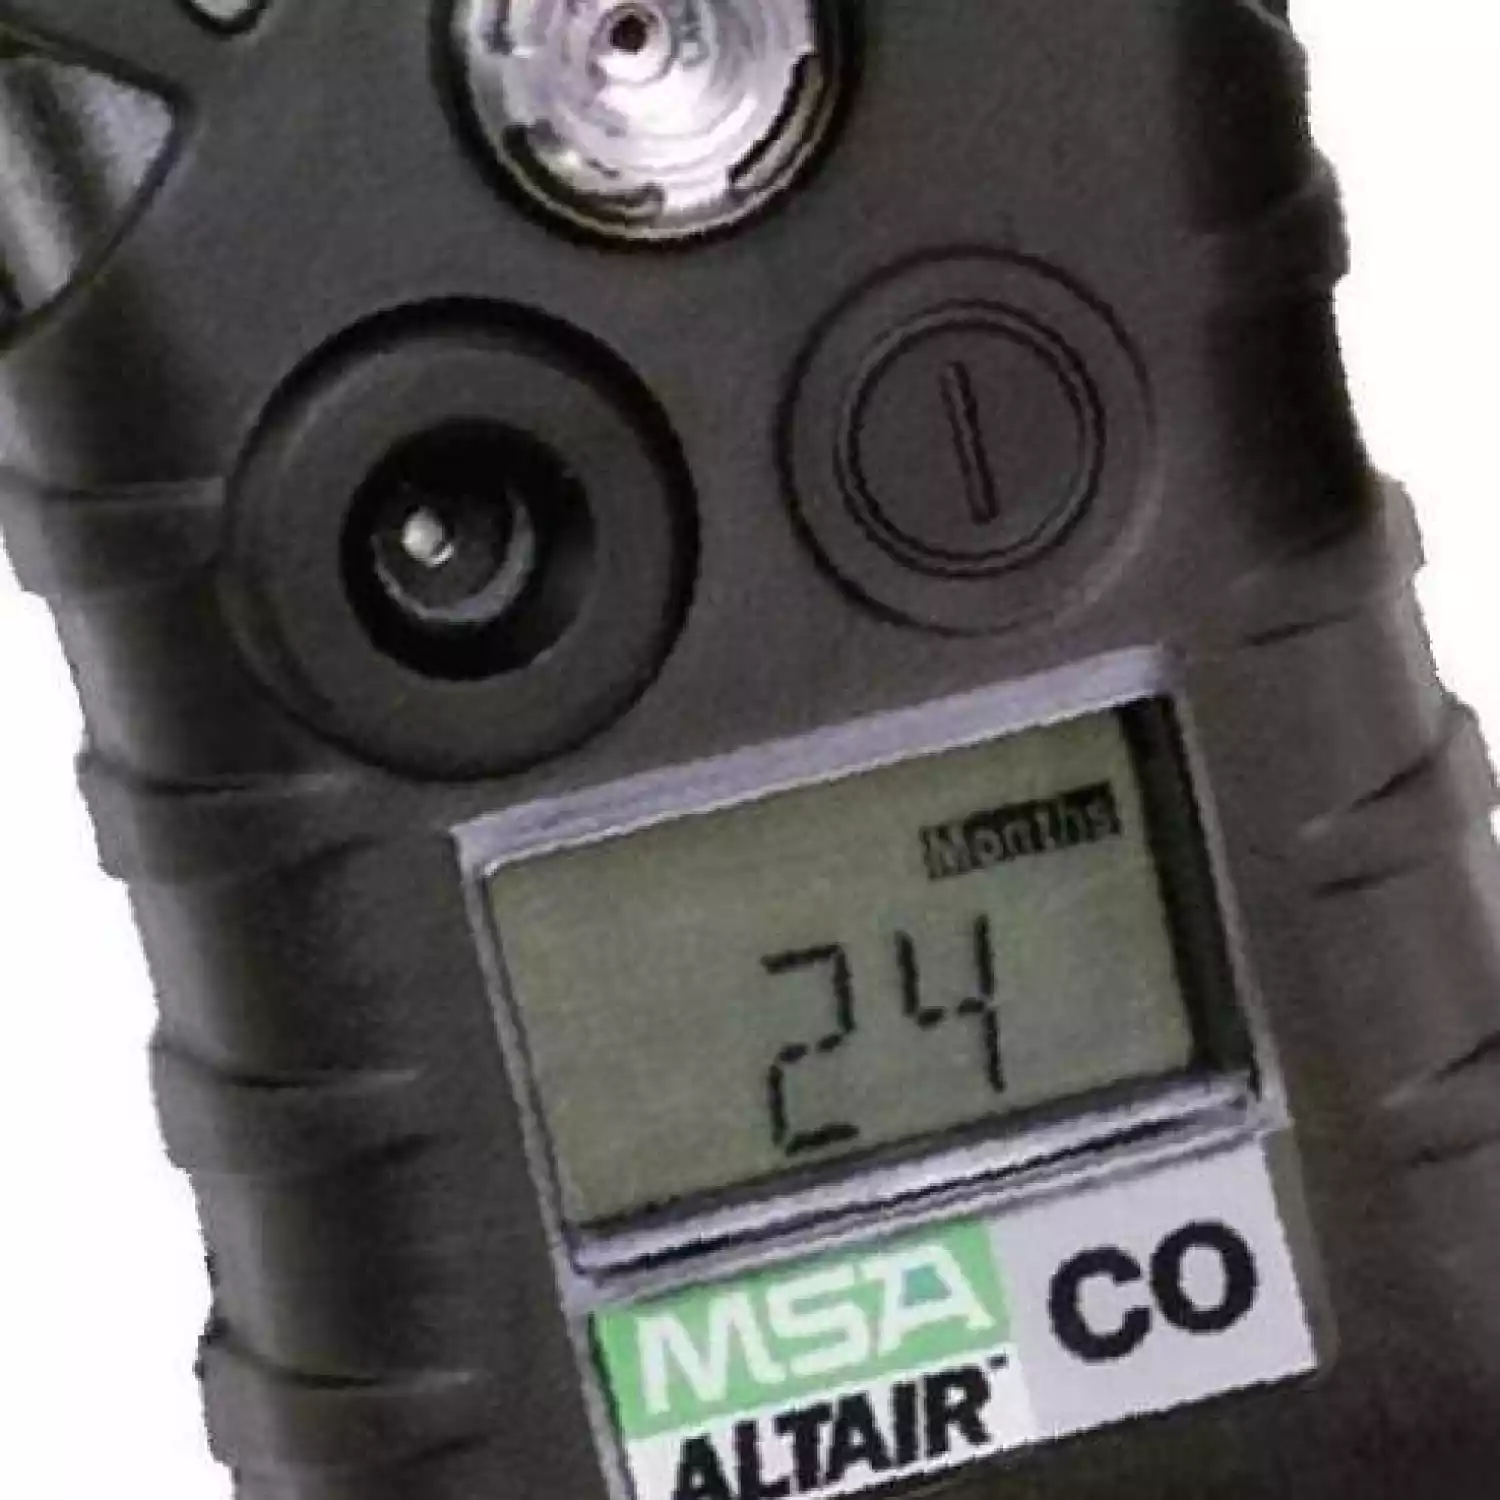 ALTAIR 2X CO газоанализатор, пороги тревог: 50, 200, 200, 50 ppm - 3